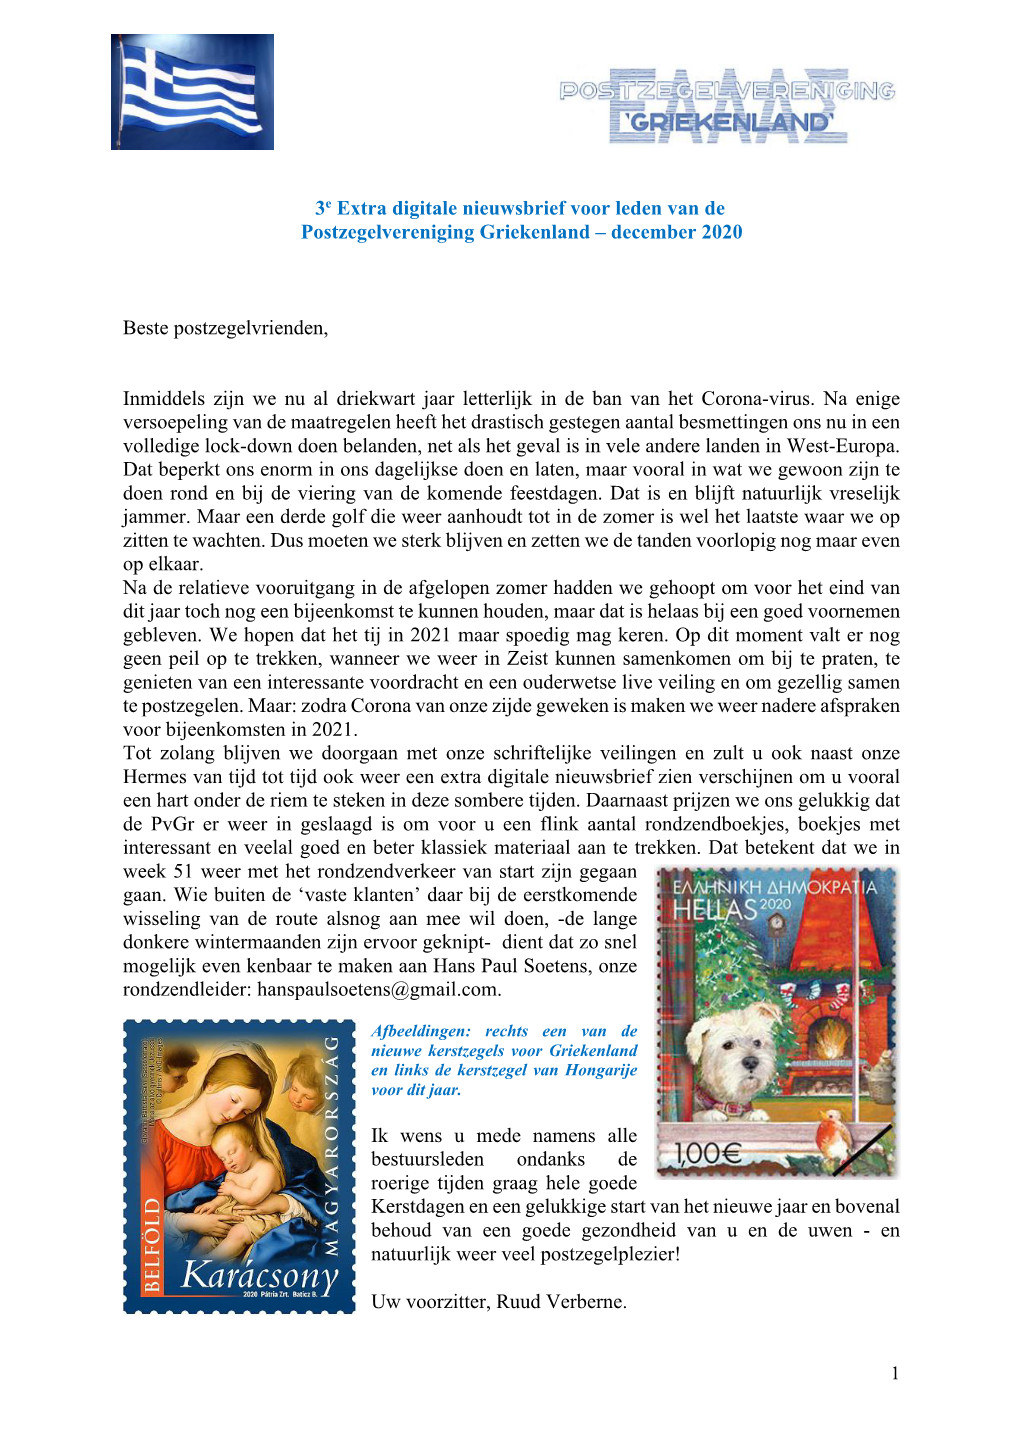 3E Extra Digitale Nieuwsbrief Voor Leden Van De Postzegelvereniging Griekenland – December 2020